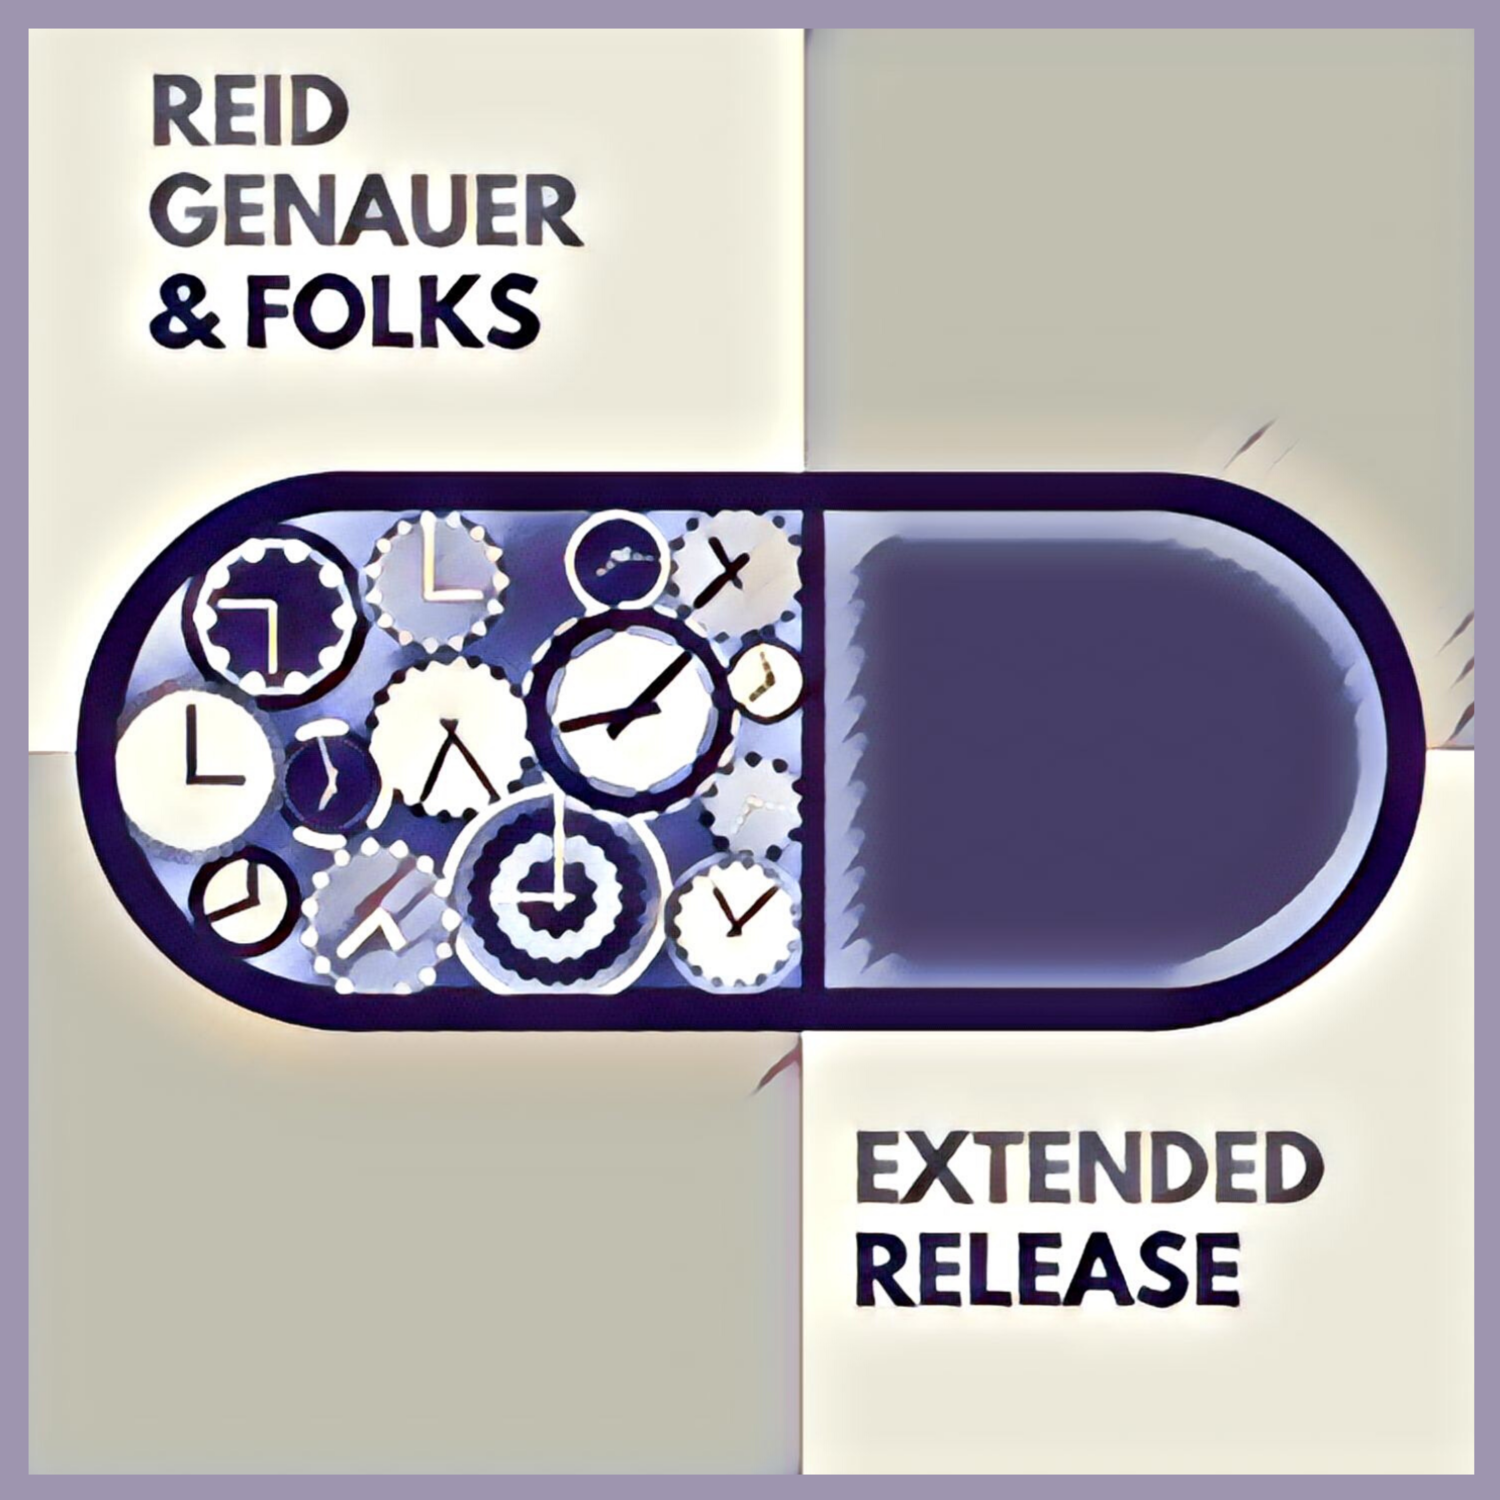 Reid Genauer & Folks: Extended Release